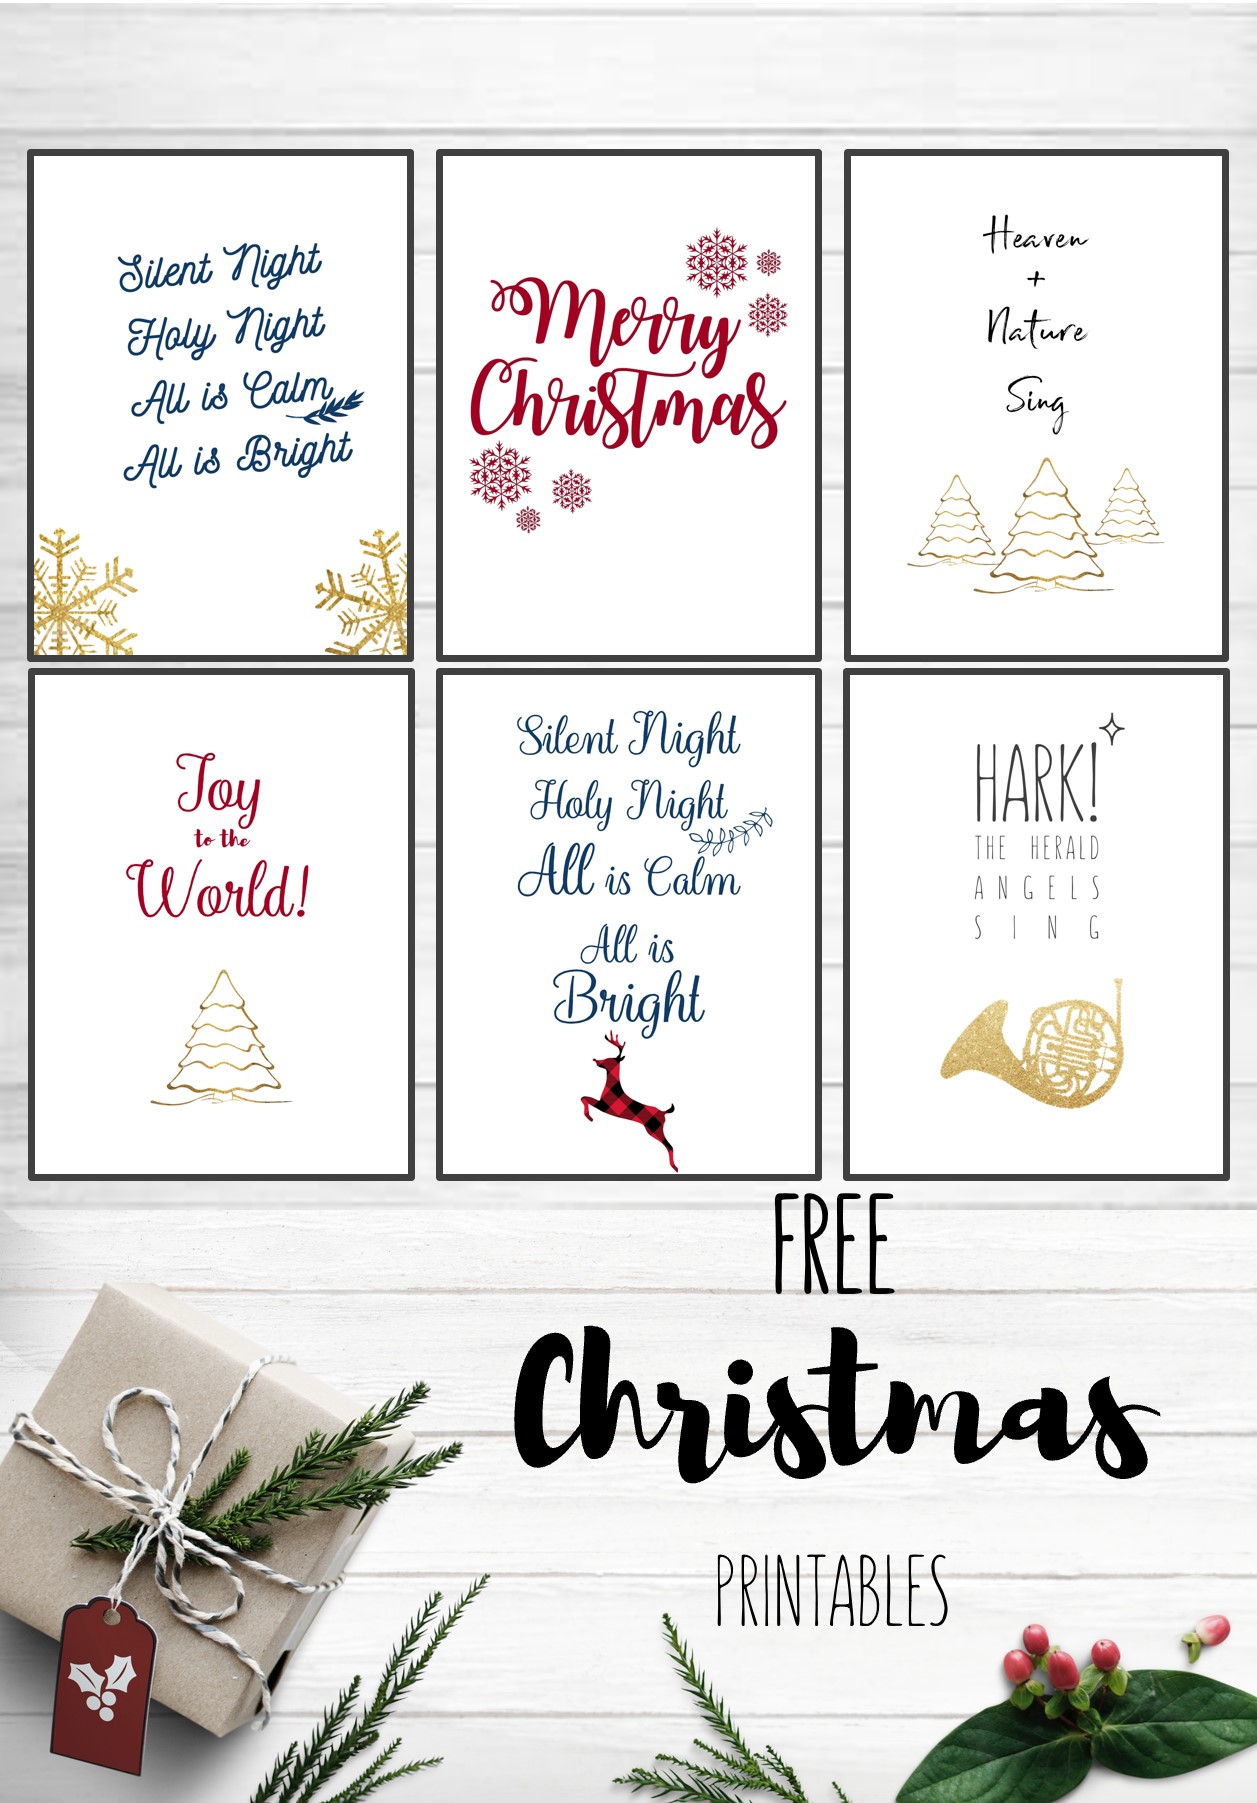 Free Christmas Printables